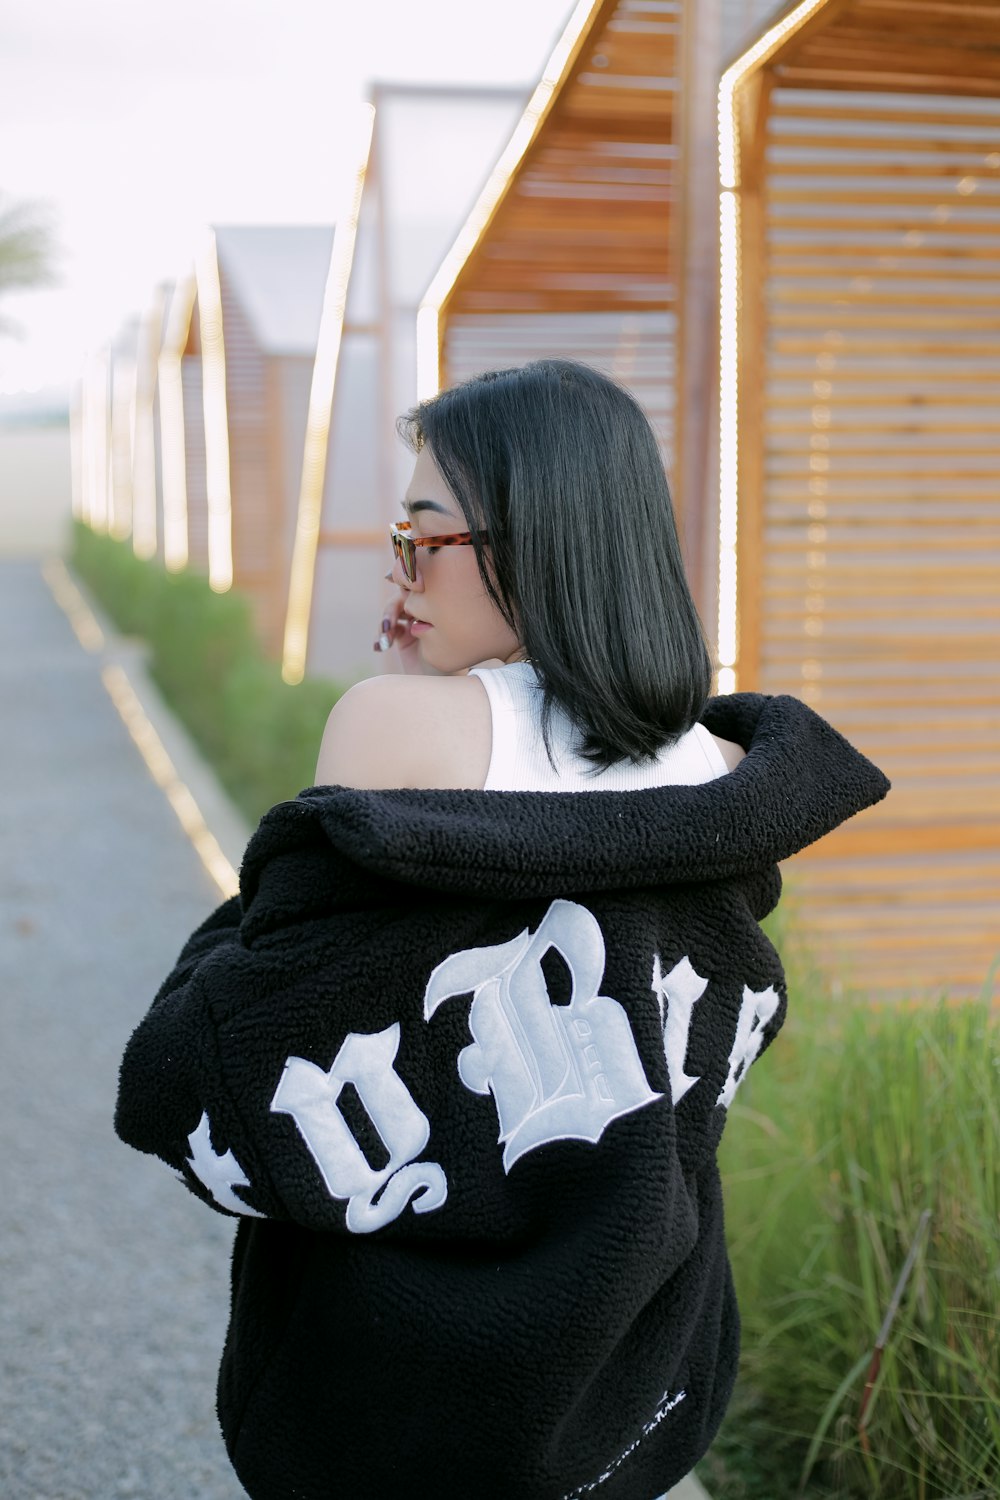 Negar Tremendo Prever Foto Una mujer con cabello negro con un suéter blanco y negro – Imagen  Fotografía gratis en Unsplash